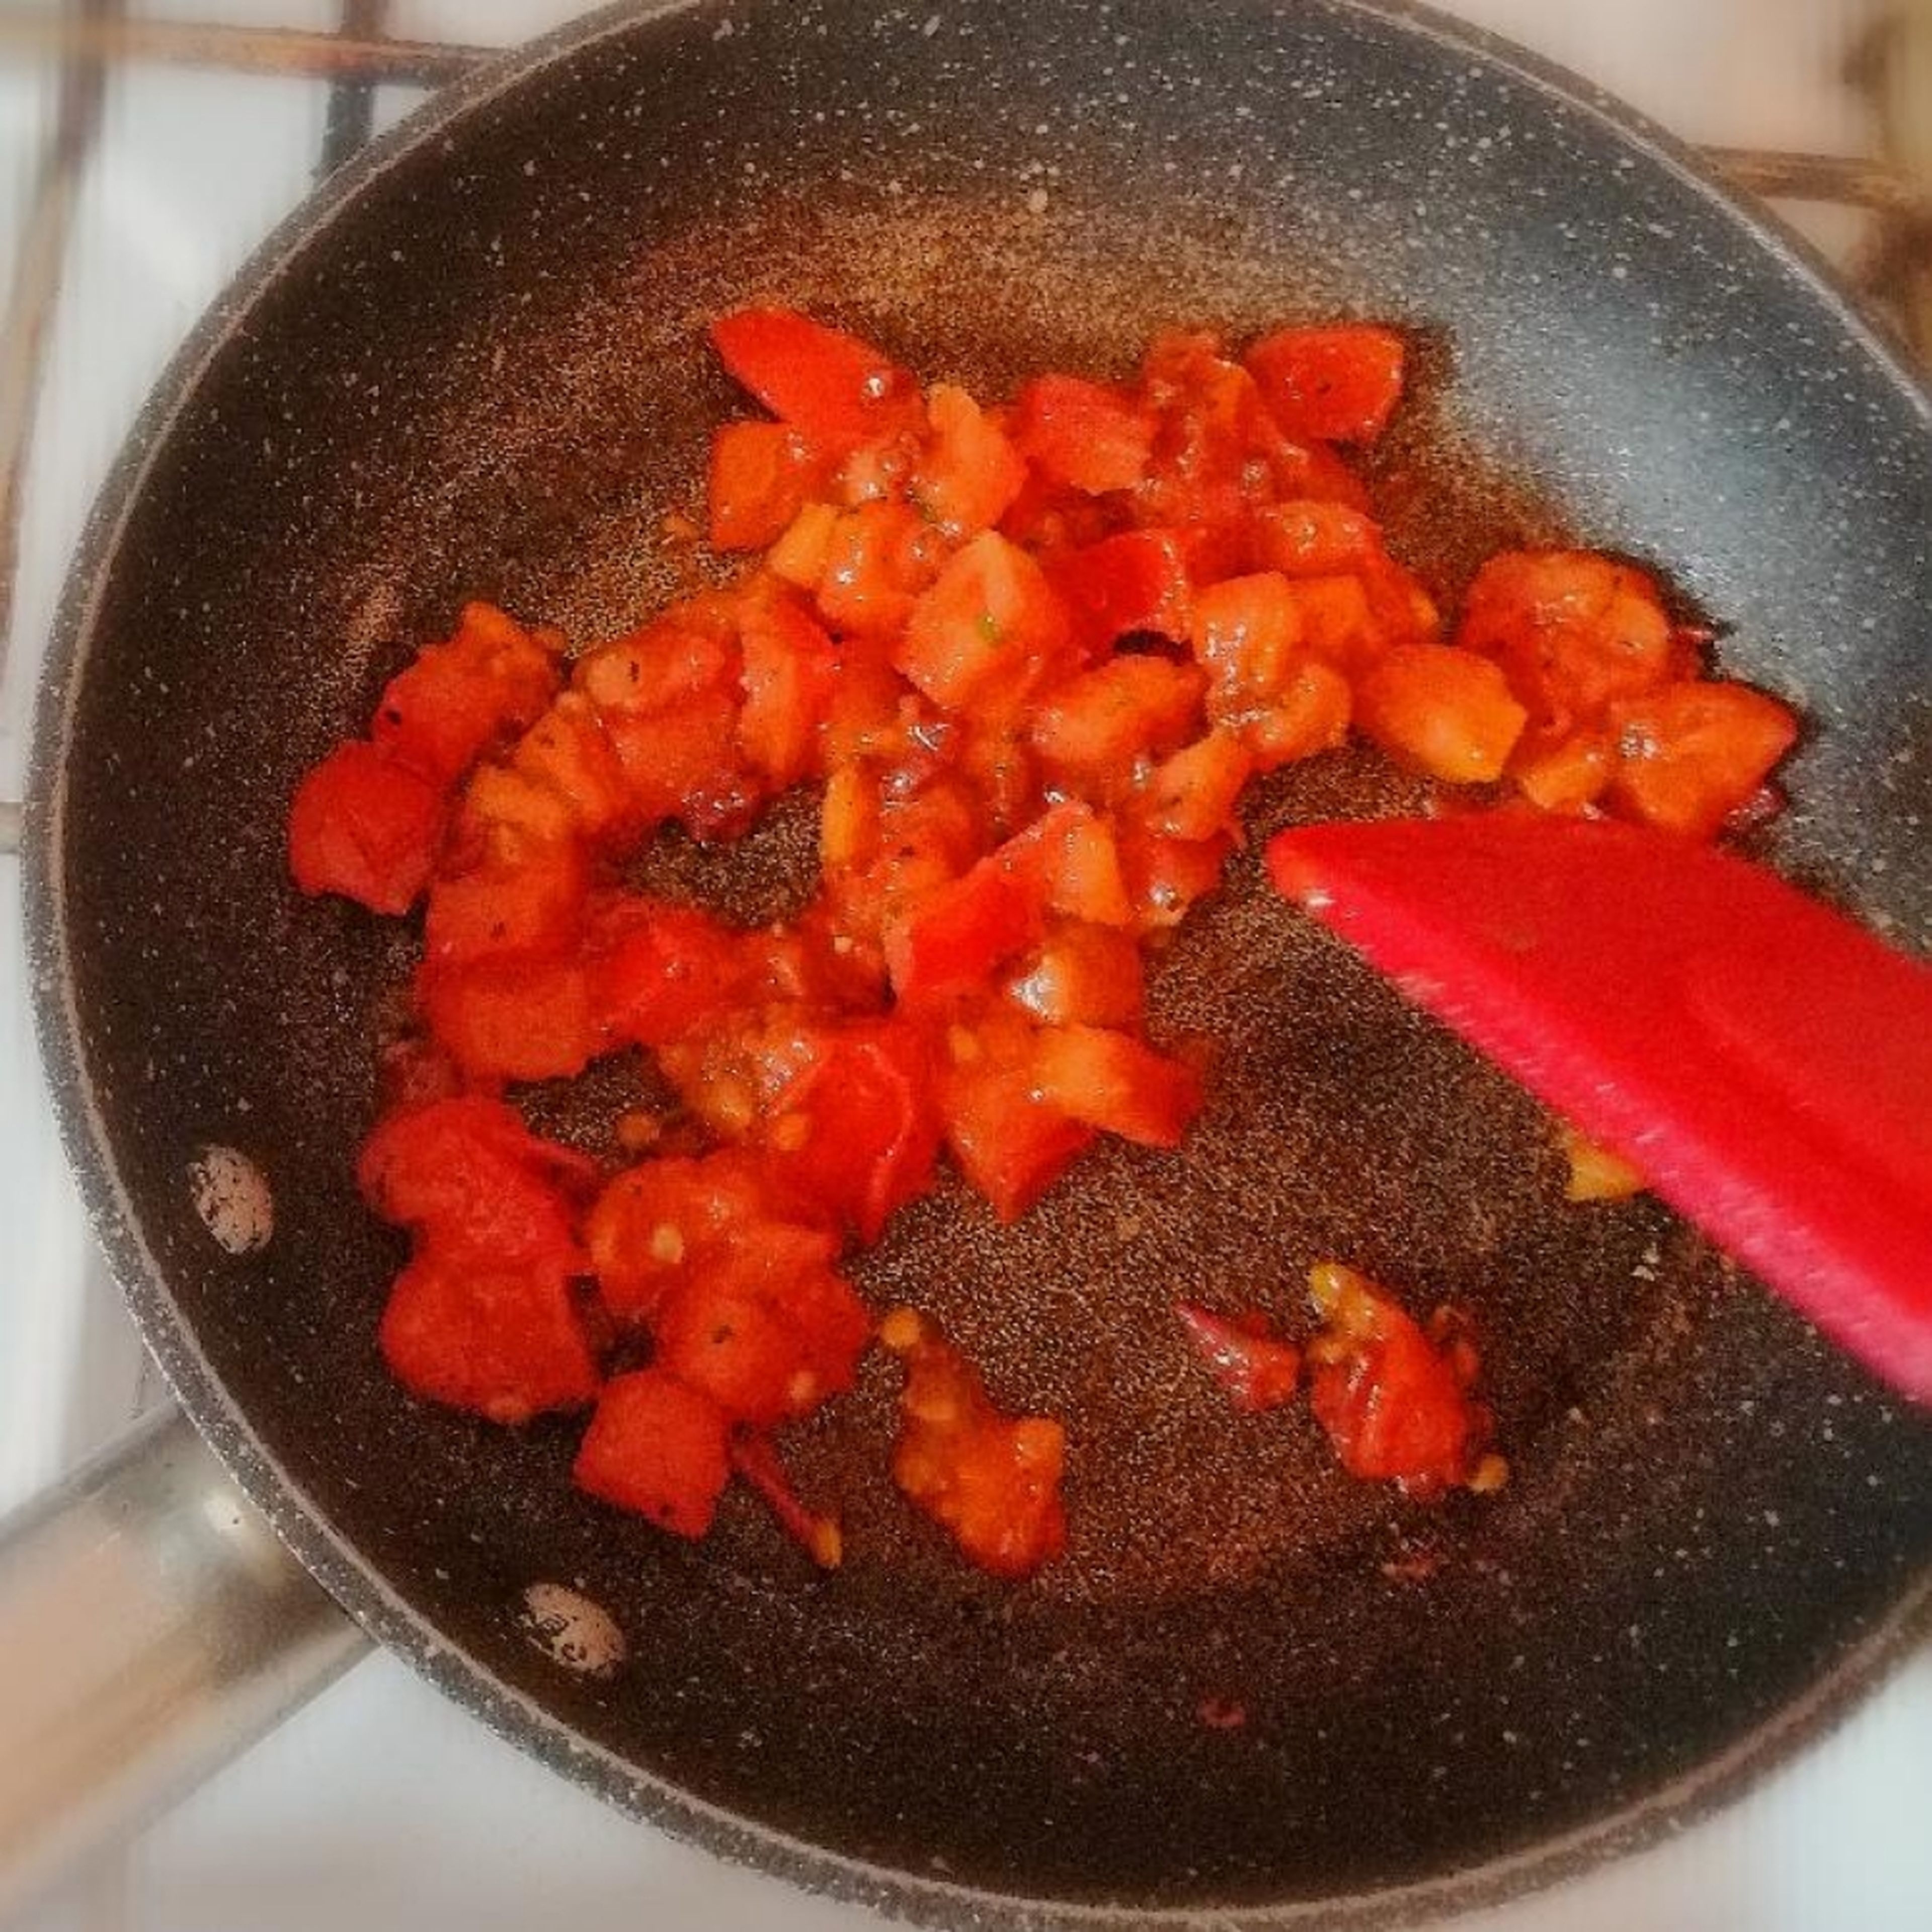 Eine Pfanne auf hoher Temperatur erhitzen. Bacon ca. 1-2 Minuten knusprig anbraten, bis das Fett ausläuft. Tomaten hinzugeben und etwa 2 Minuten mitköcheln lassen. Mit Rotwein ablöschen. Vom Herd nehmen, sobald die Flüssigkeit verdampft ist.